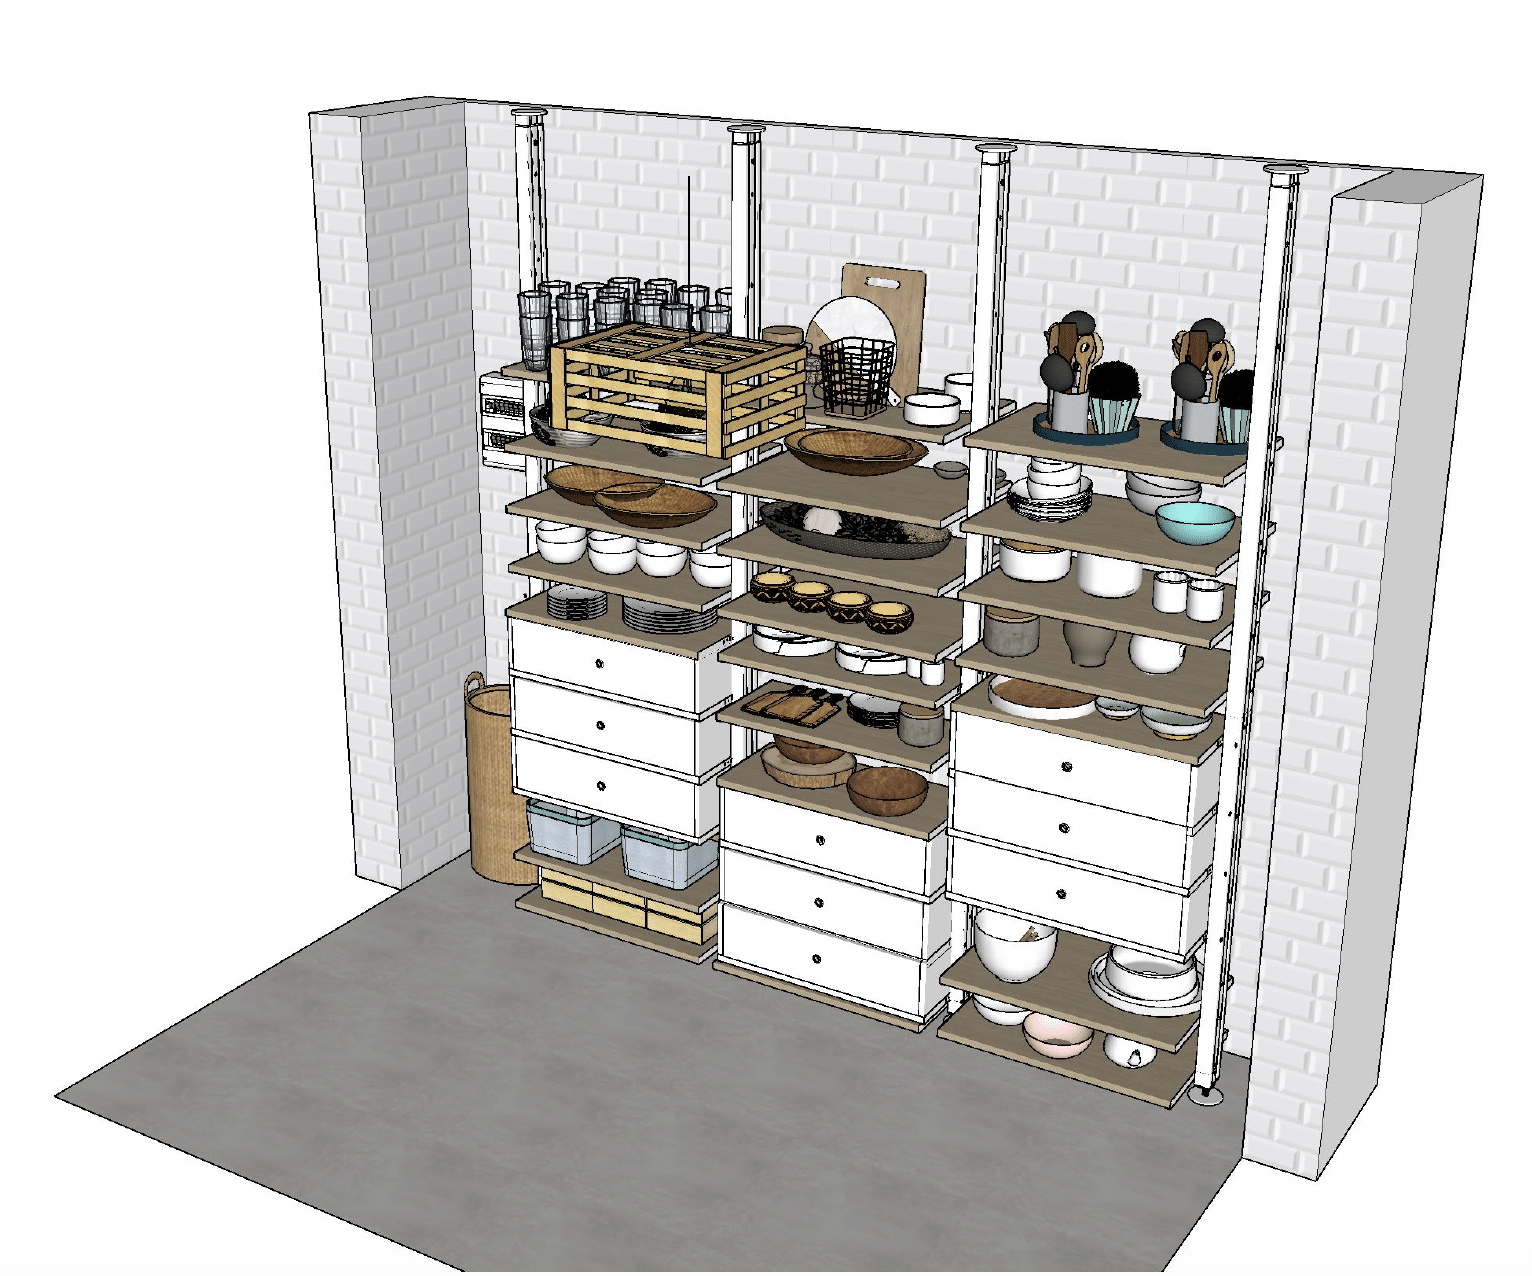 Dessin 3D cellier rangement vaisselle mur carrelage metro